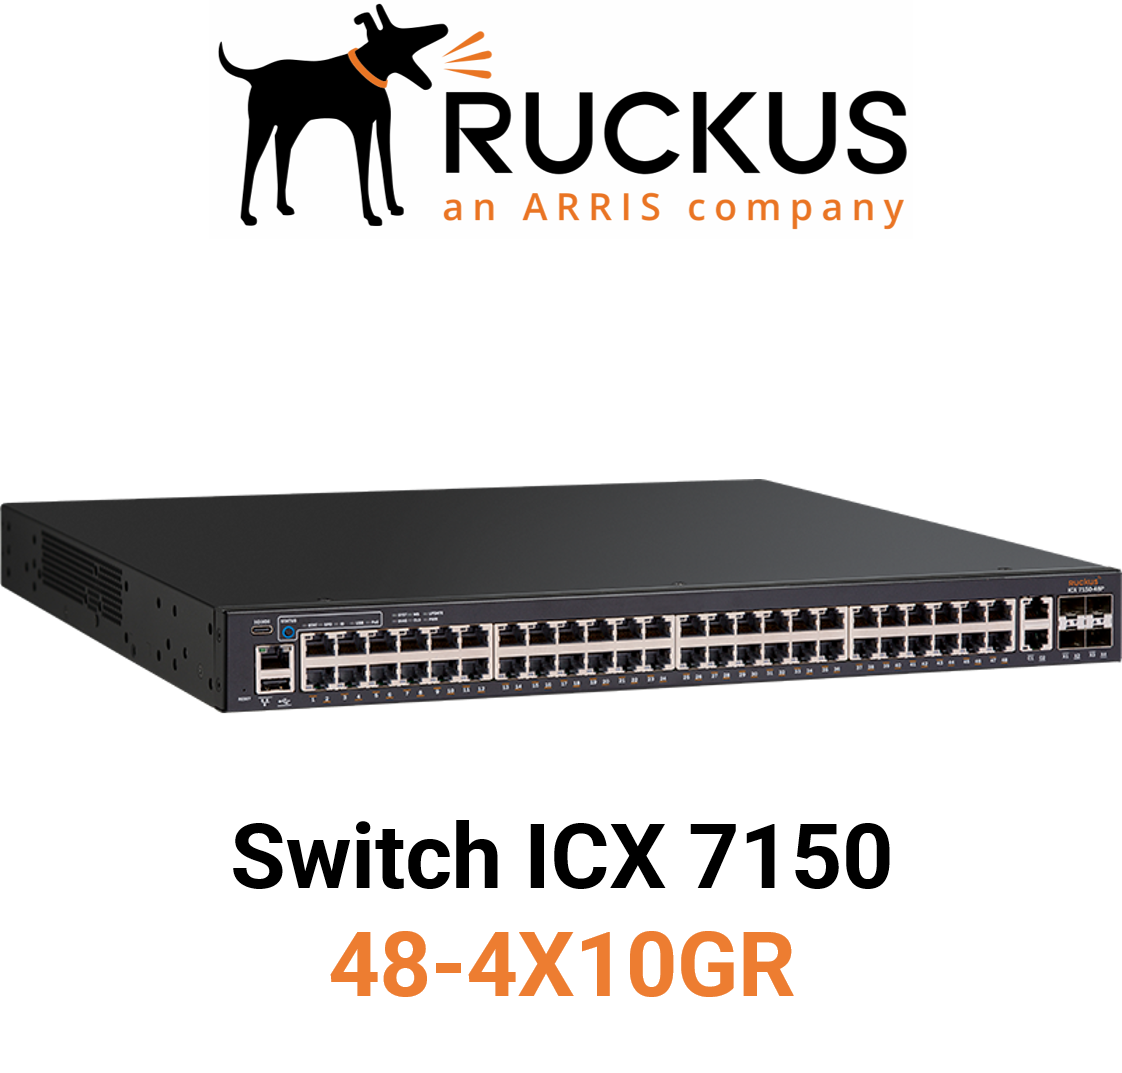 Ruckus ICX7150-48-4X10GR Switch